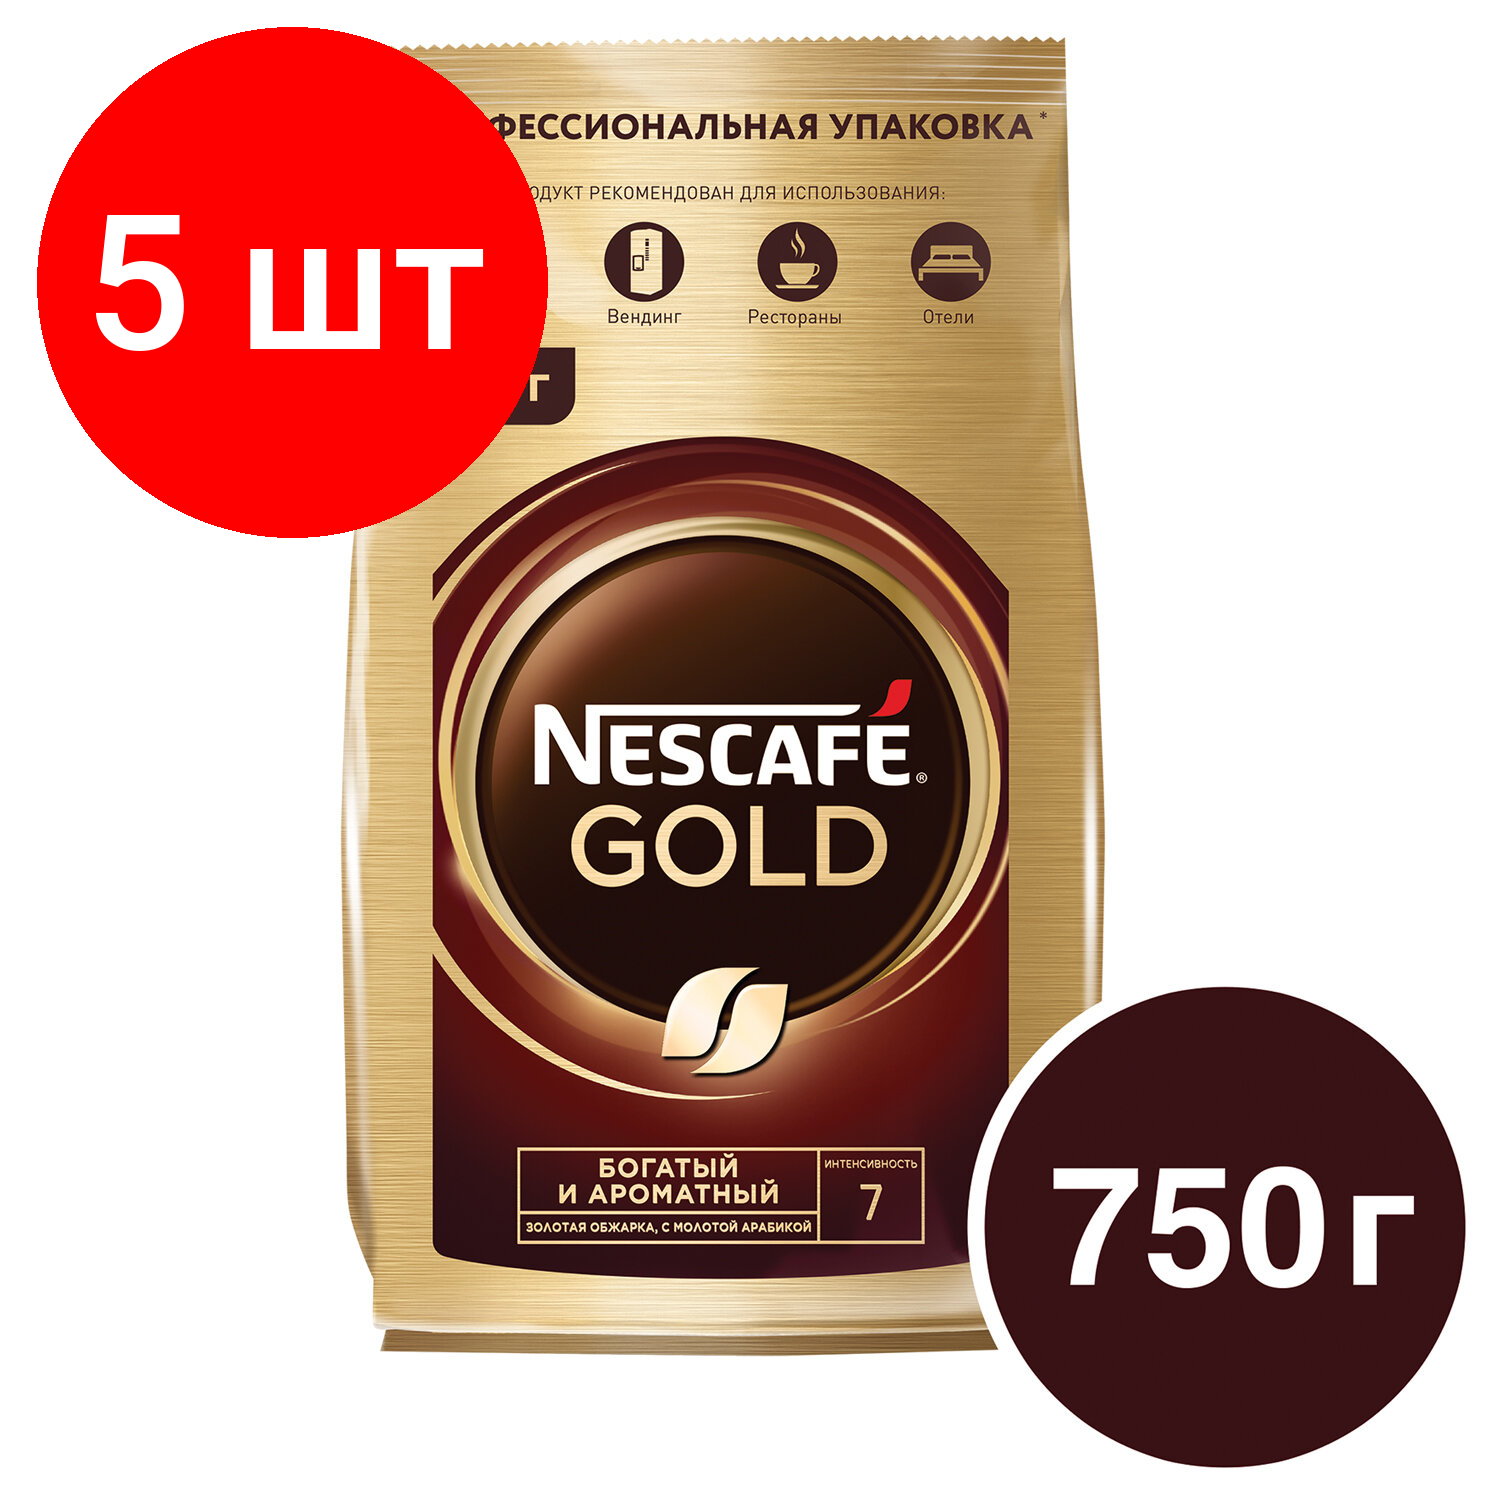 Комплект 5 шт, Кофе молотый в растворимом NESCAFE (Нескафе) "Gold", сублимированный, 750 г, мягкая упаковка, 01951, 12348310